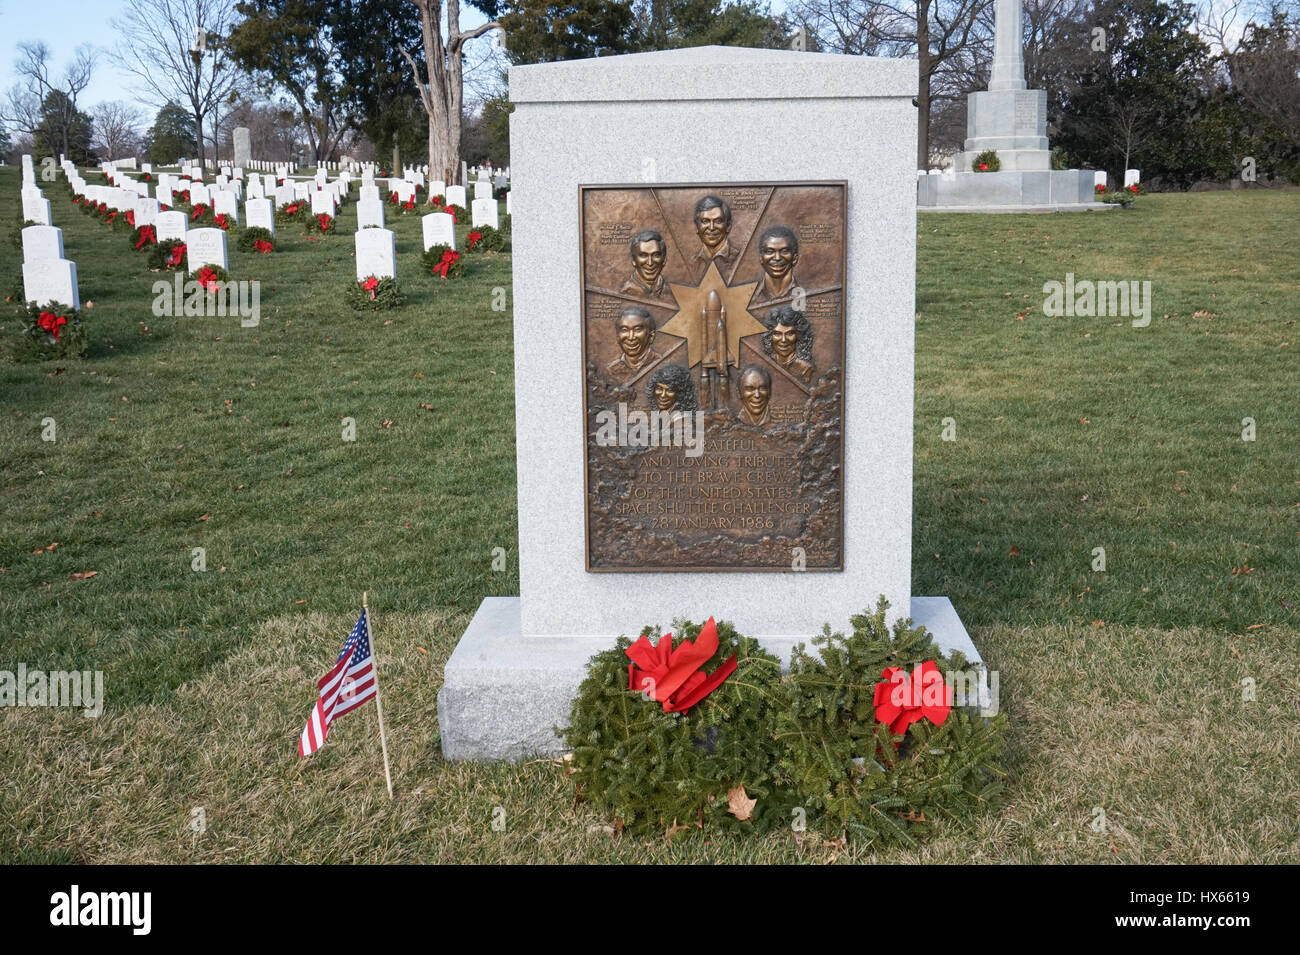 The Space Shuttle Challenger memorial, Arlington National Cemetery, Virginia, USA Stock Photo